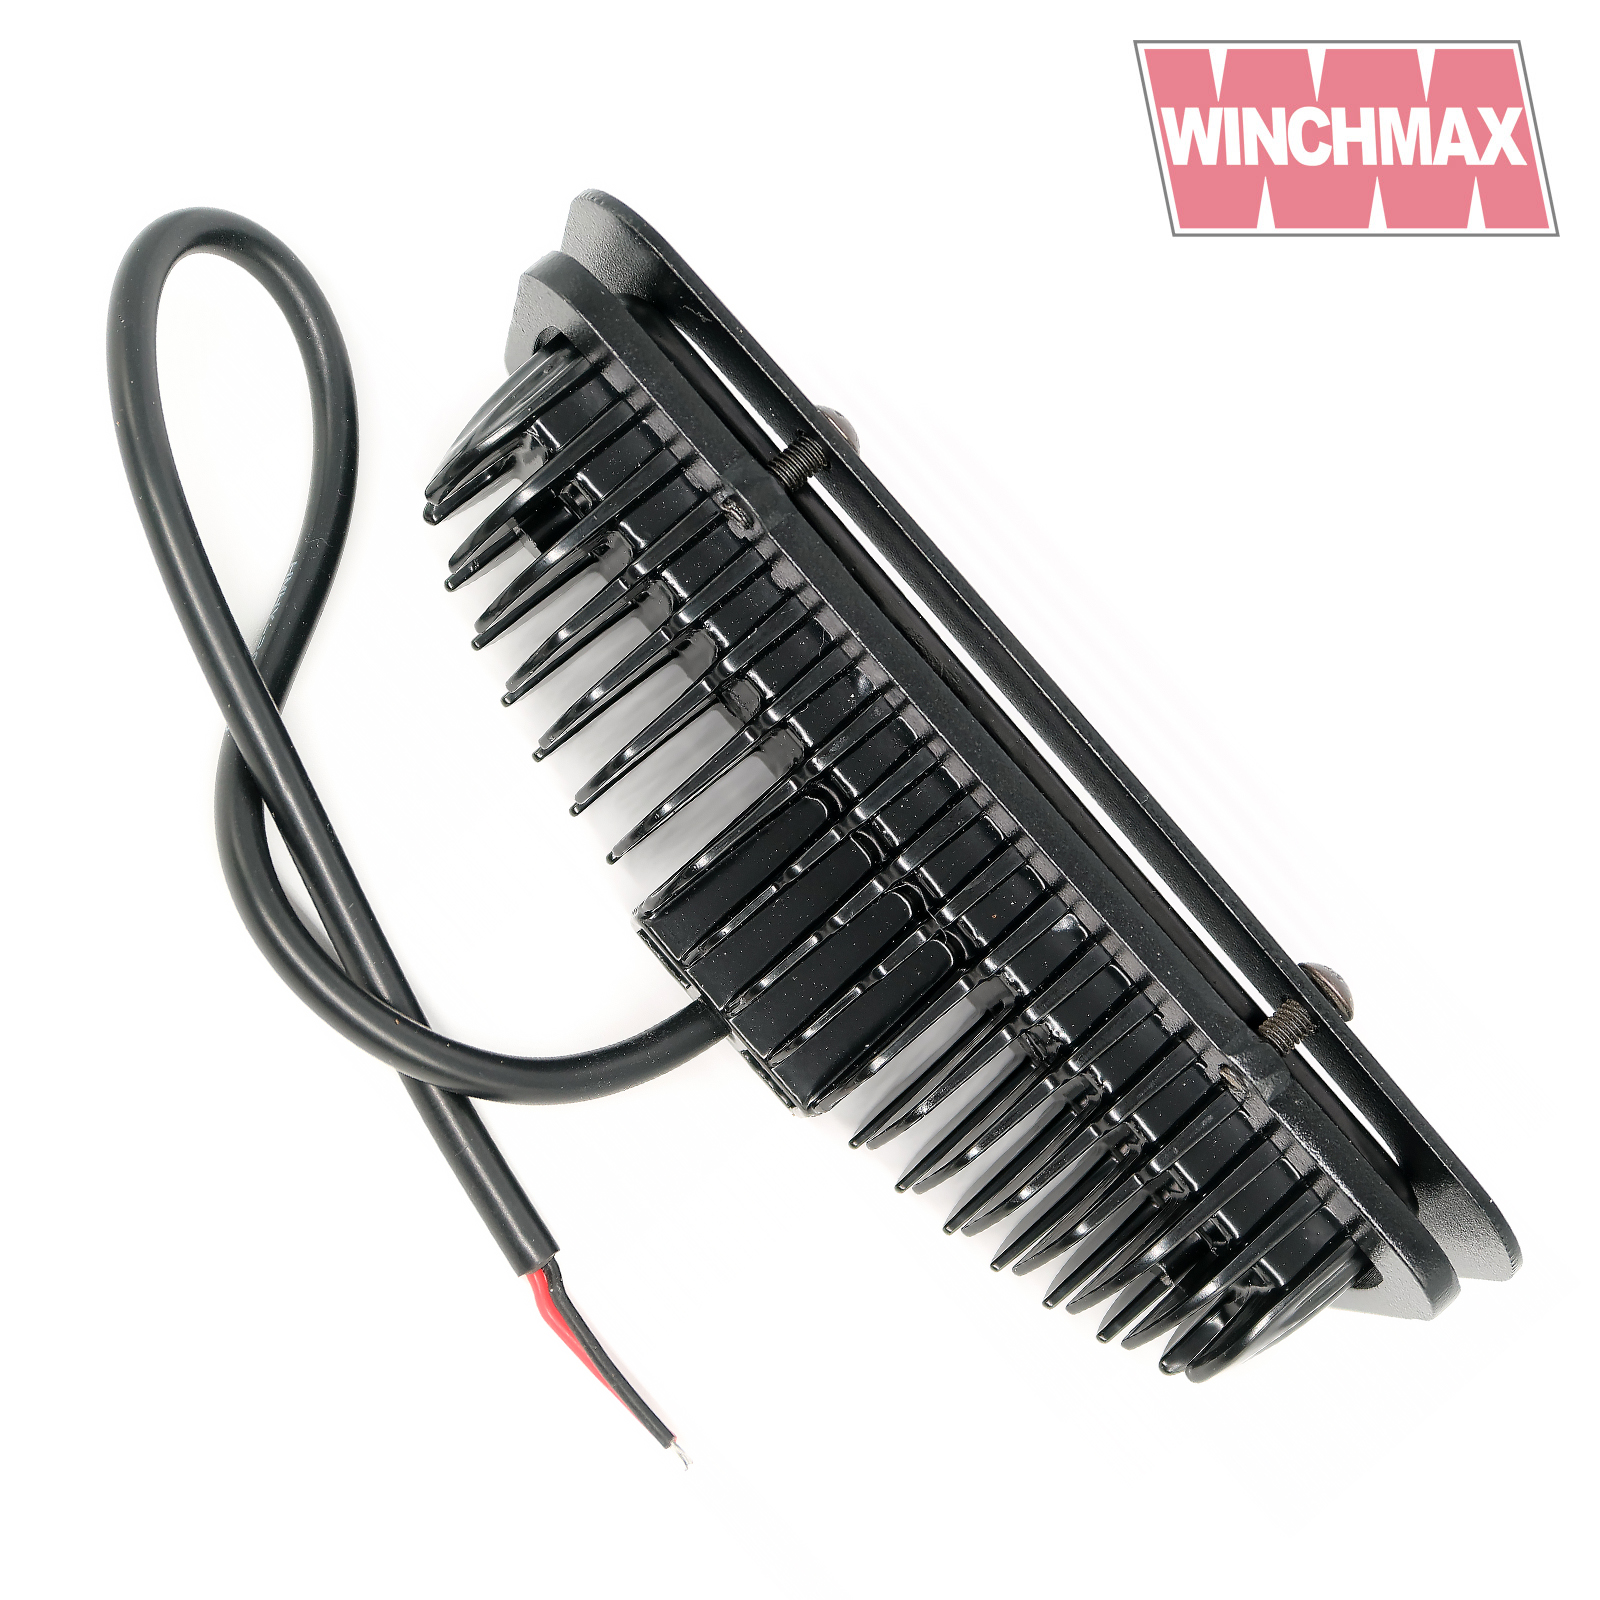 Winchmax Defender bumper LEDs